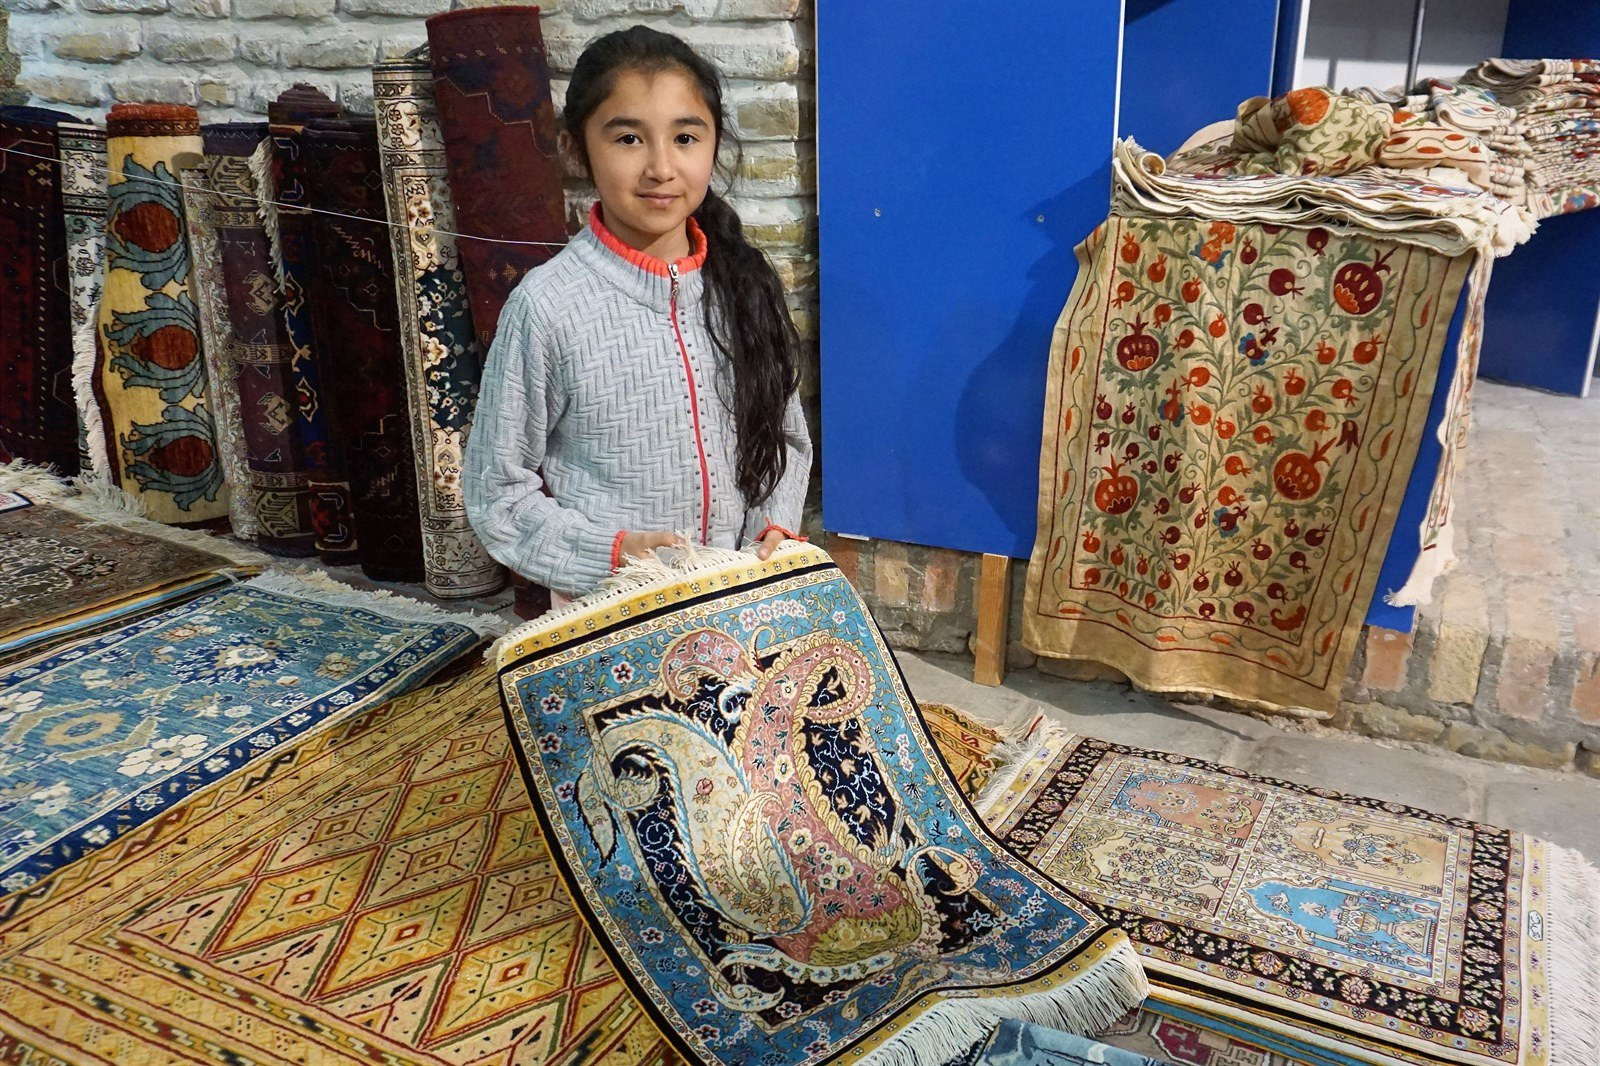 V Uzbekistane sme si obľúbili trhy, kde sa dali zohnať všemožné druhy tovaru. Toto dievčatko predávalo koberce. My sme si žiadny nekúpili, pretože už aj tak máme veľa vecí a domov je ešte ďaleko.